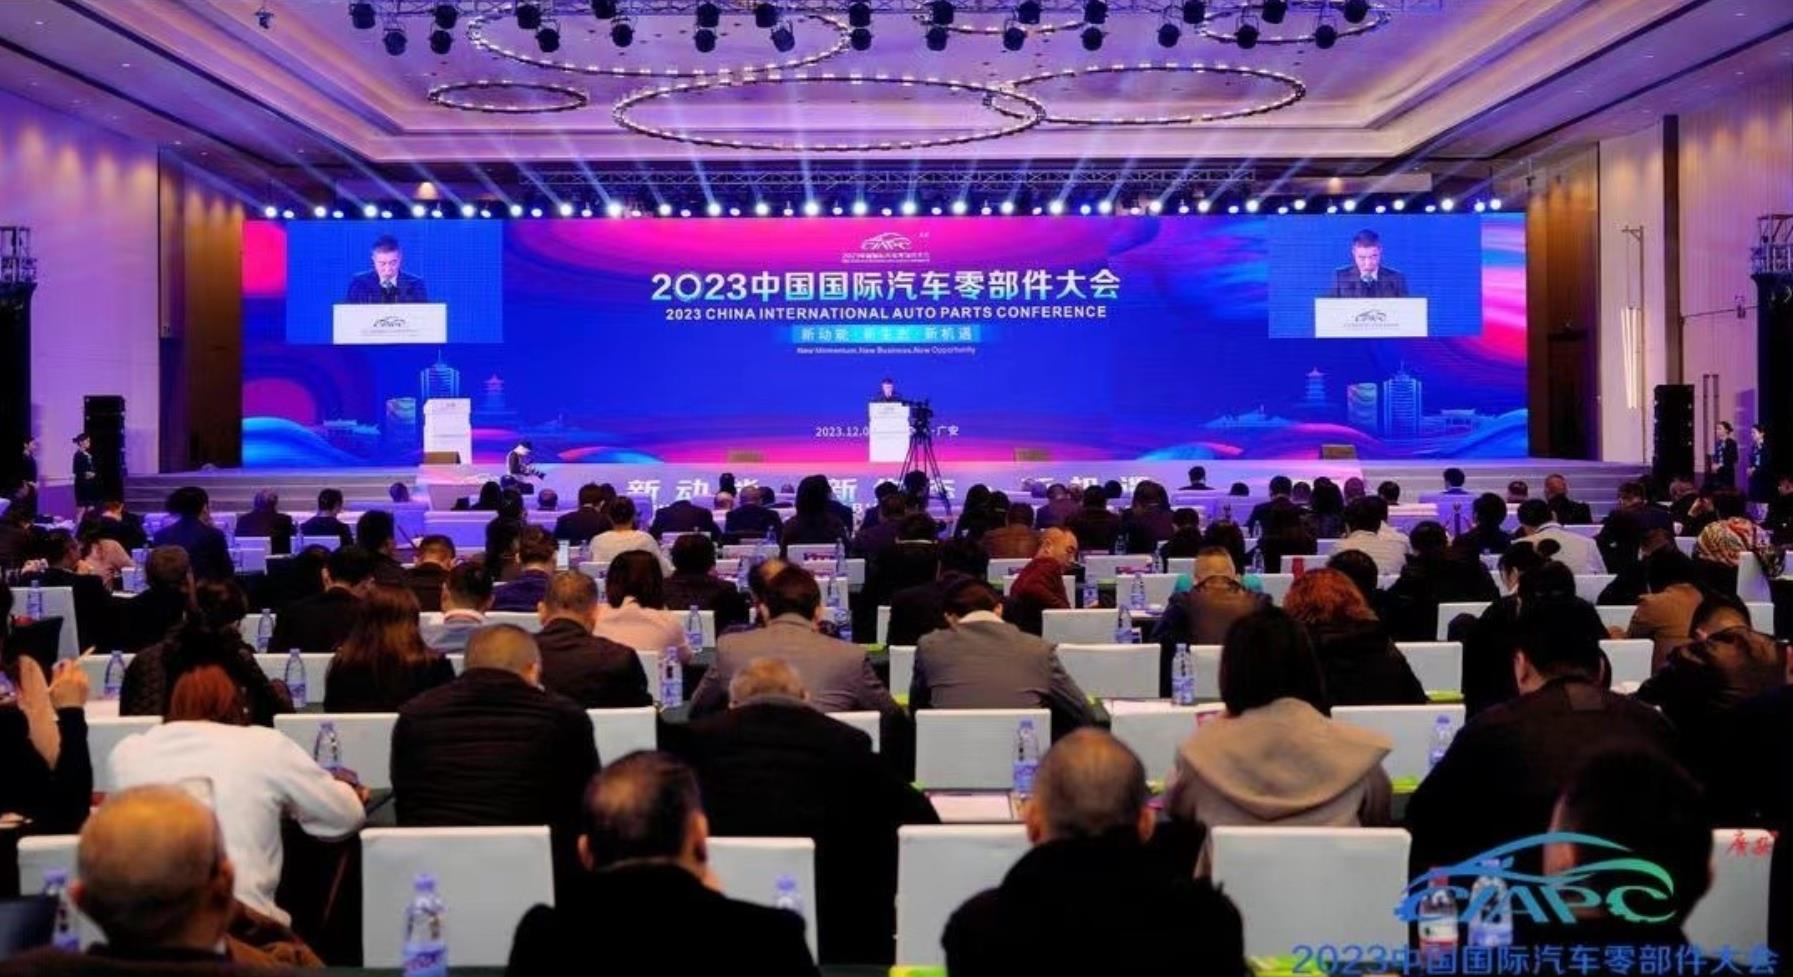 2023中国国际汽车零部件大会在四川广安顺利举行